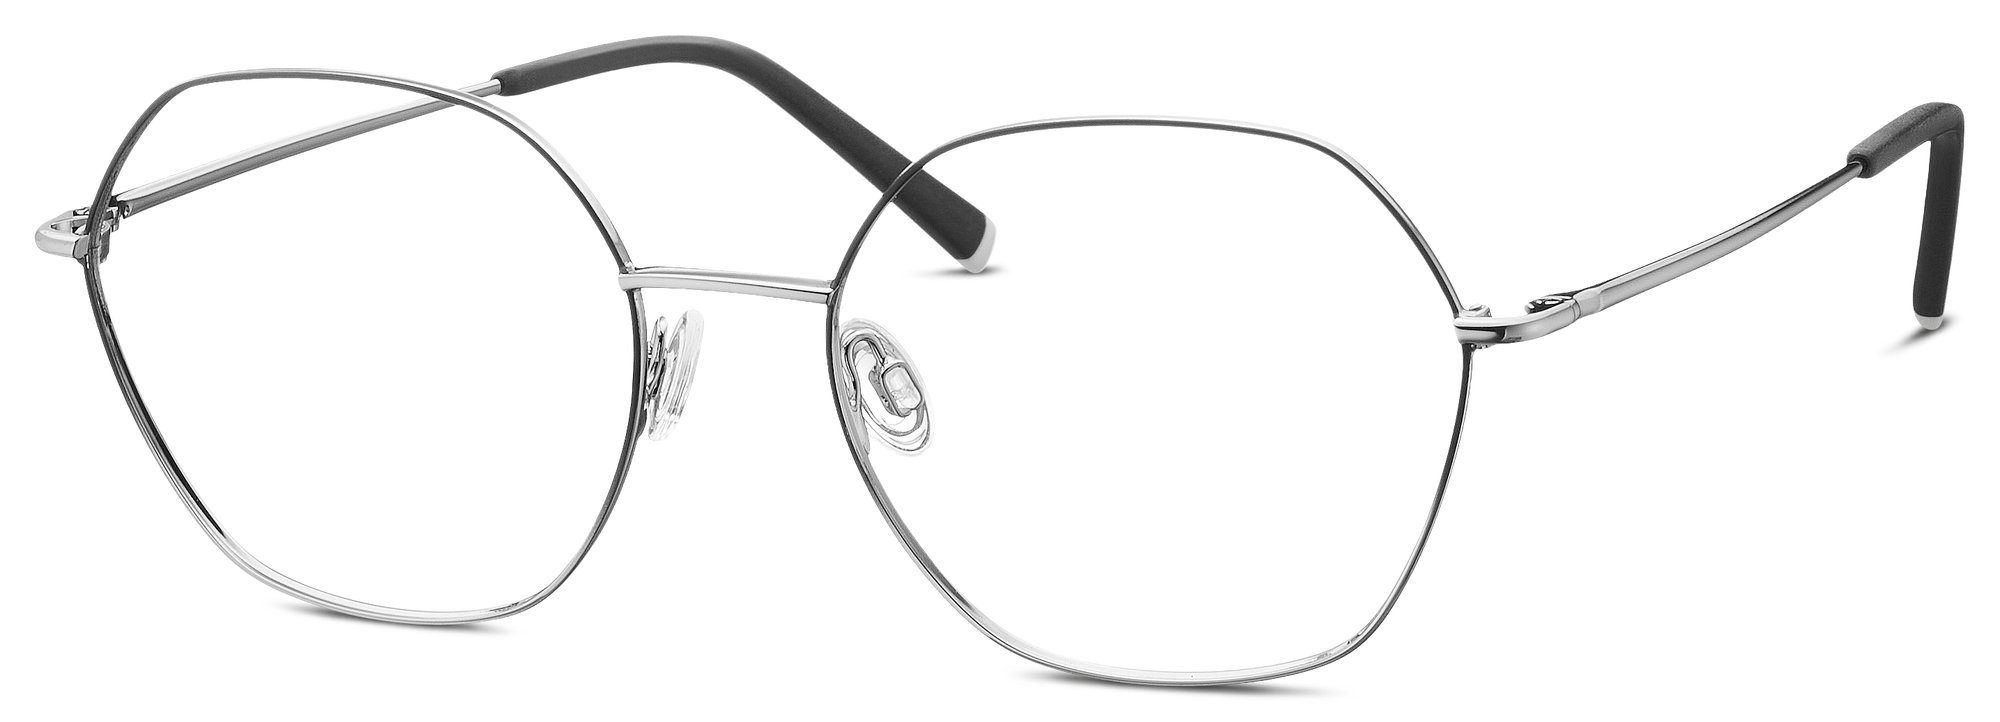 Das Bild zeigt die Korrektionsbrille 582371 30 von der Marke Humphrey‘s in grau.